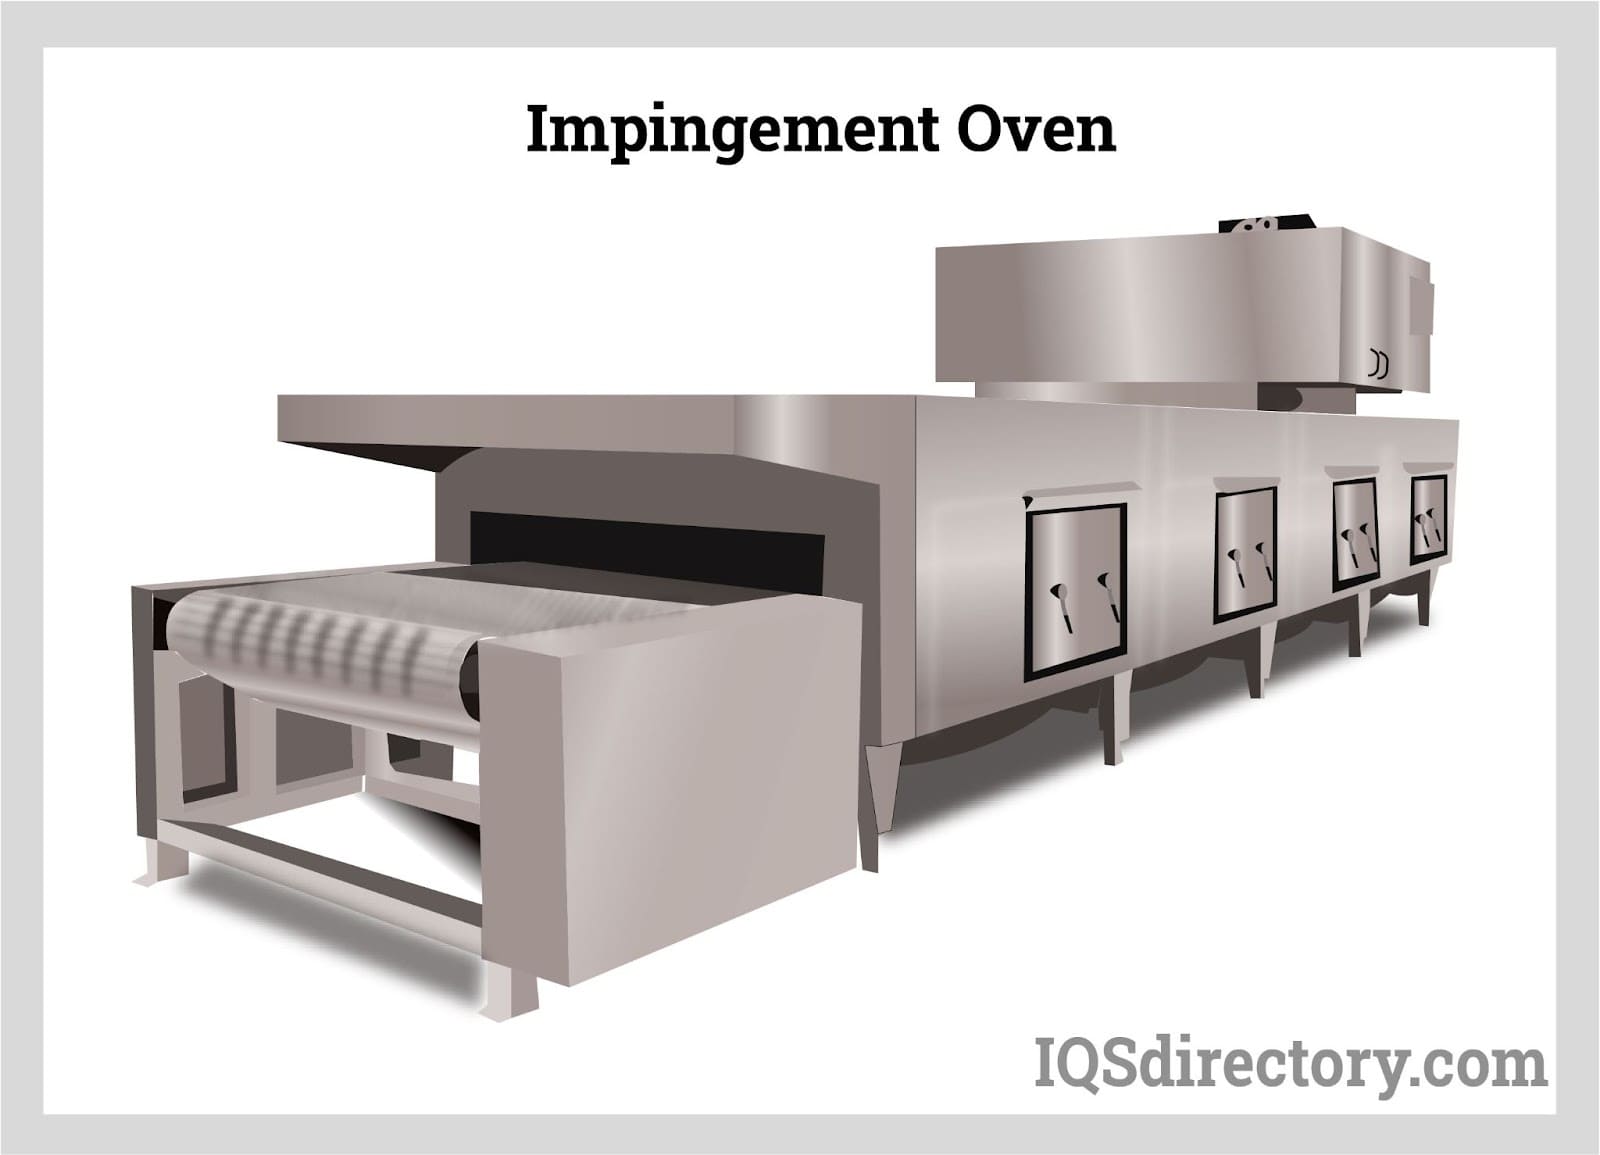 Impingement Oven